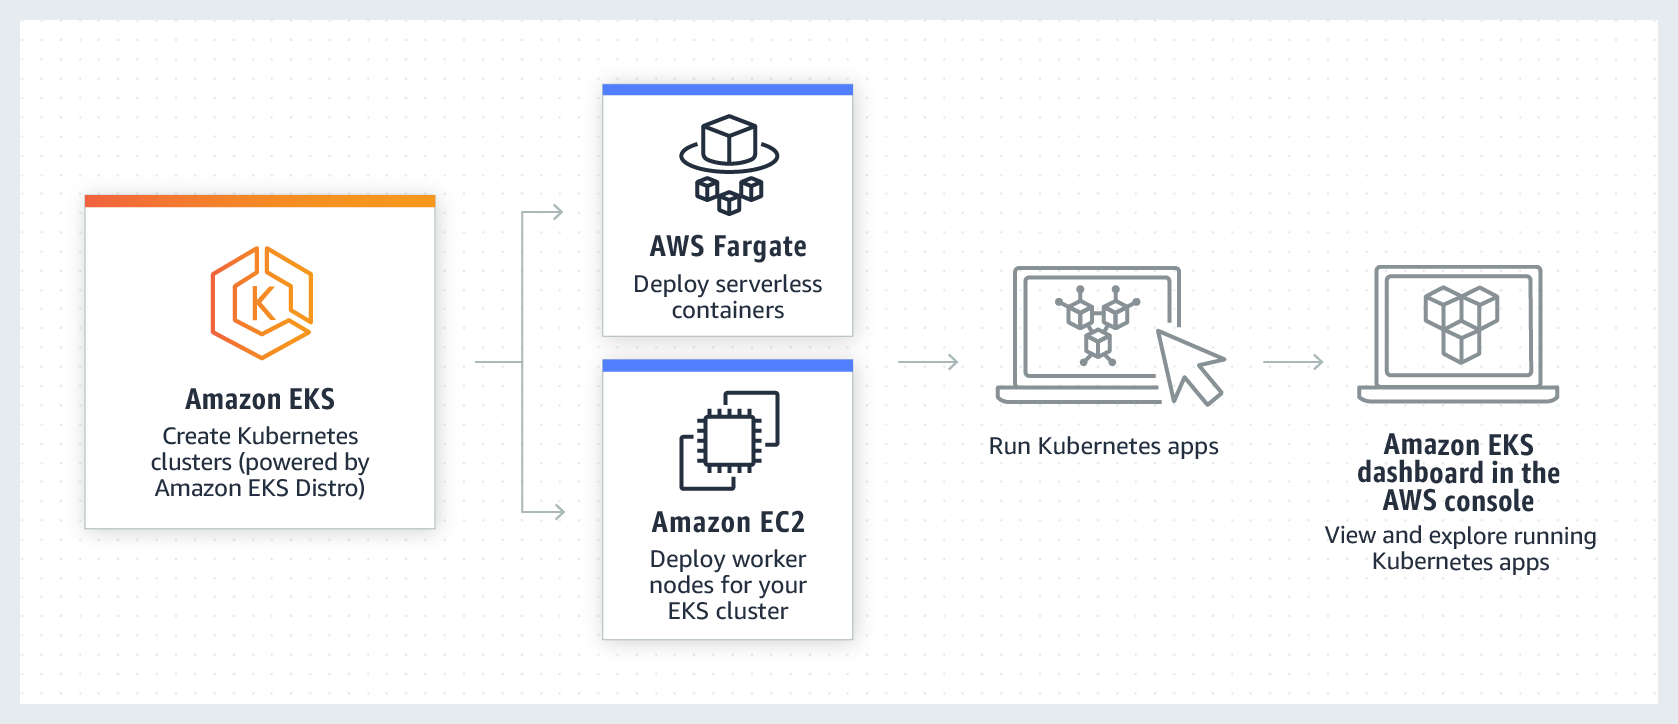 Amazon Elastic Kubernetes Service (Amazon EKS) is a managed Kubernetes service to run Kubernetes in the AWS cloud and on-premises data centers.